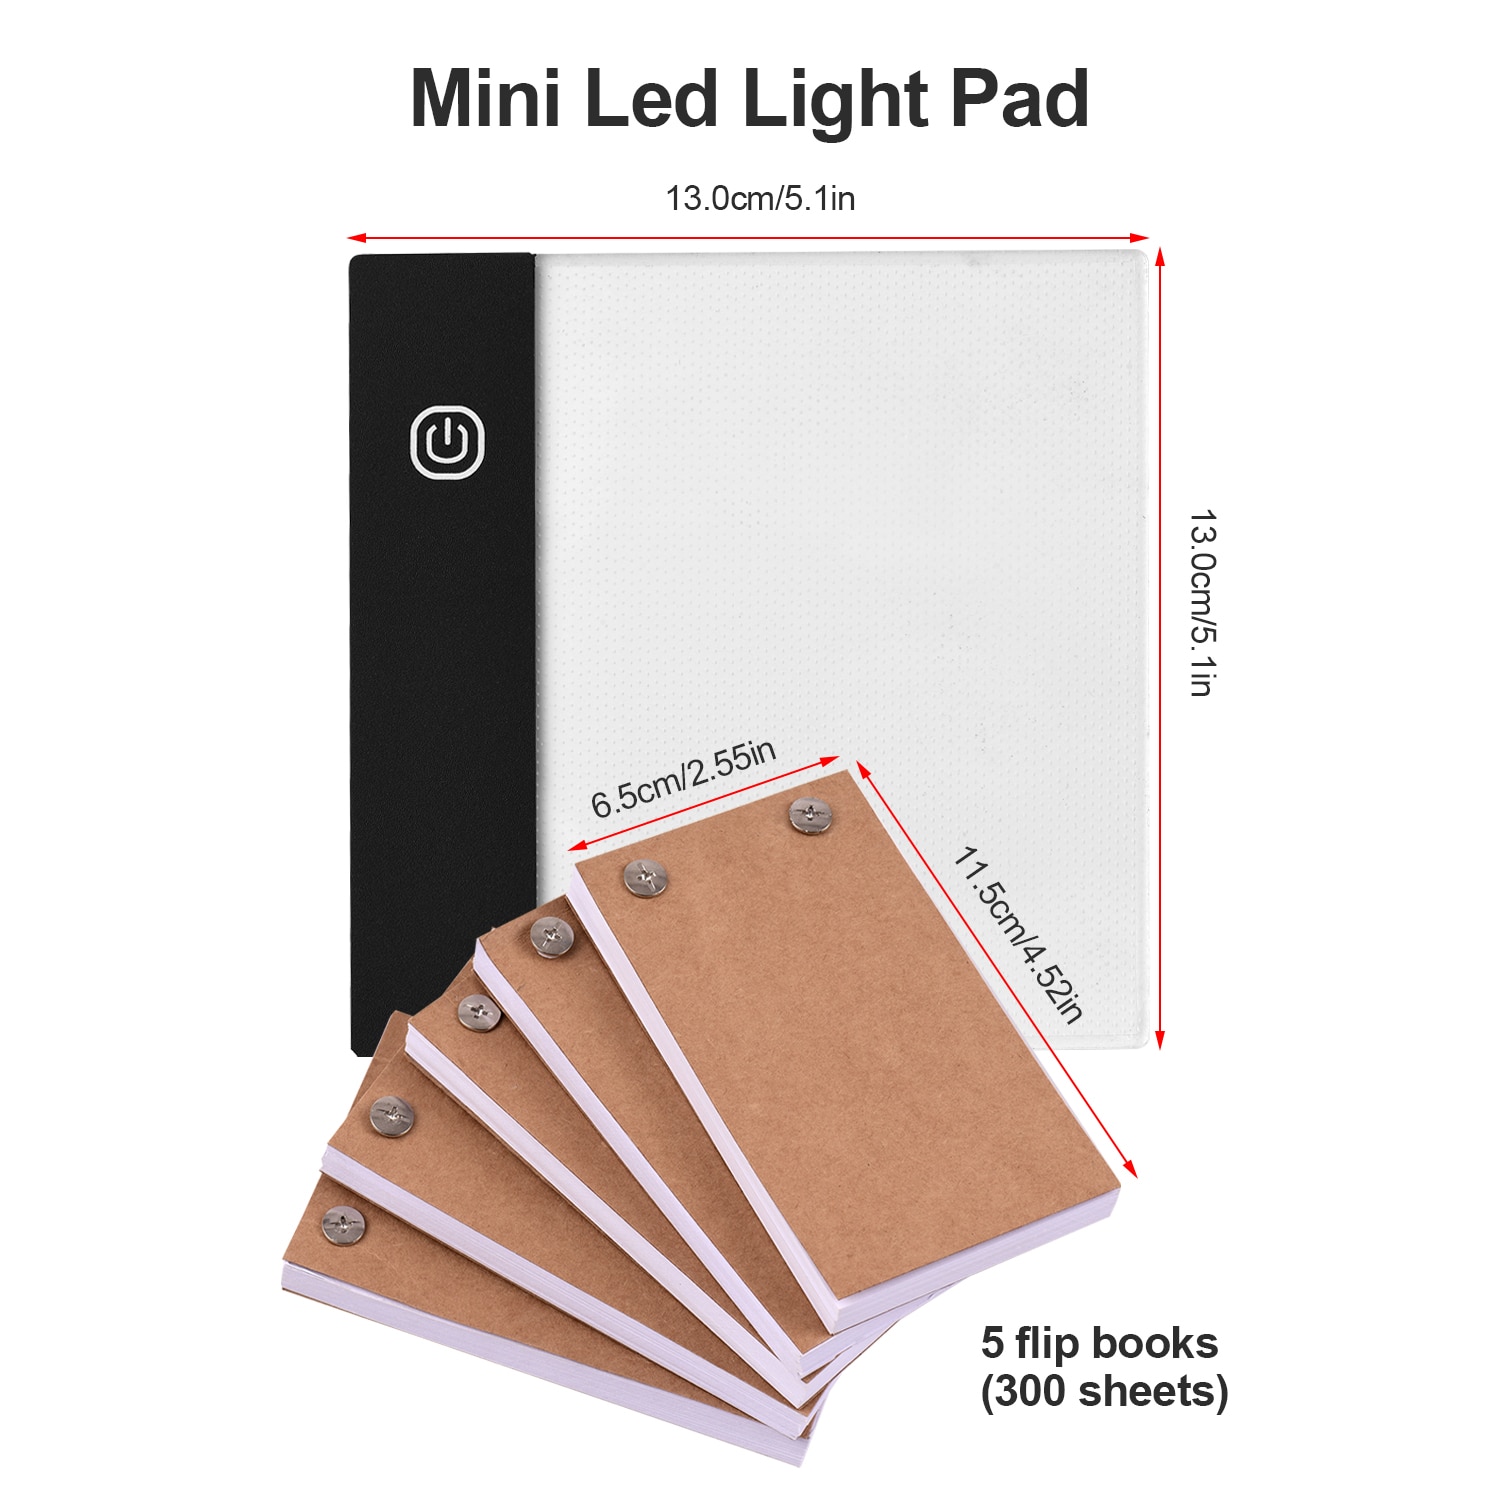 Flip Boek Kit Met Mini Licht Pad Led Lightbox Tablet Gat 300 Vellen Flipbook Papier Binding Schroeven Voor Animatie Schetsen